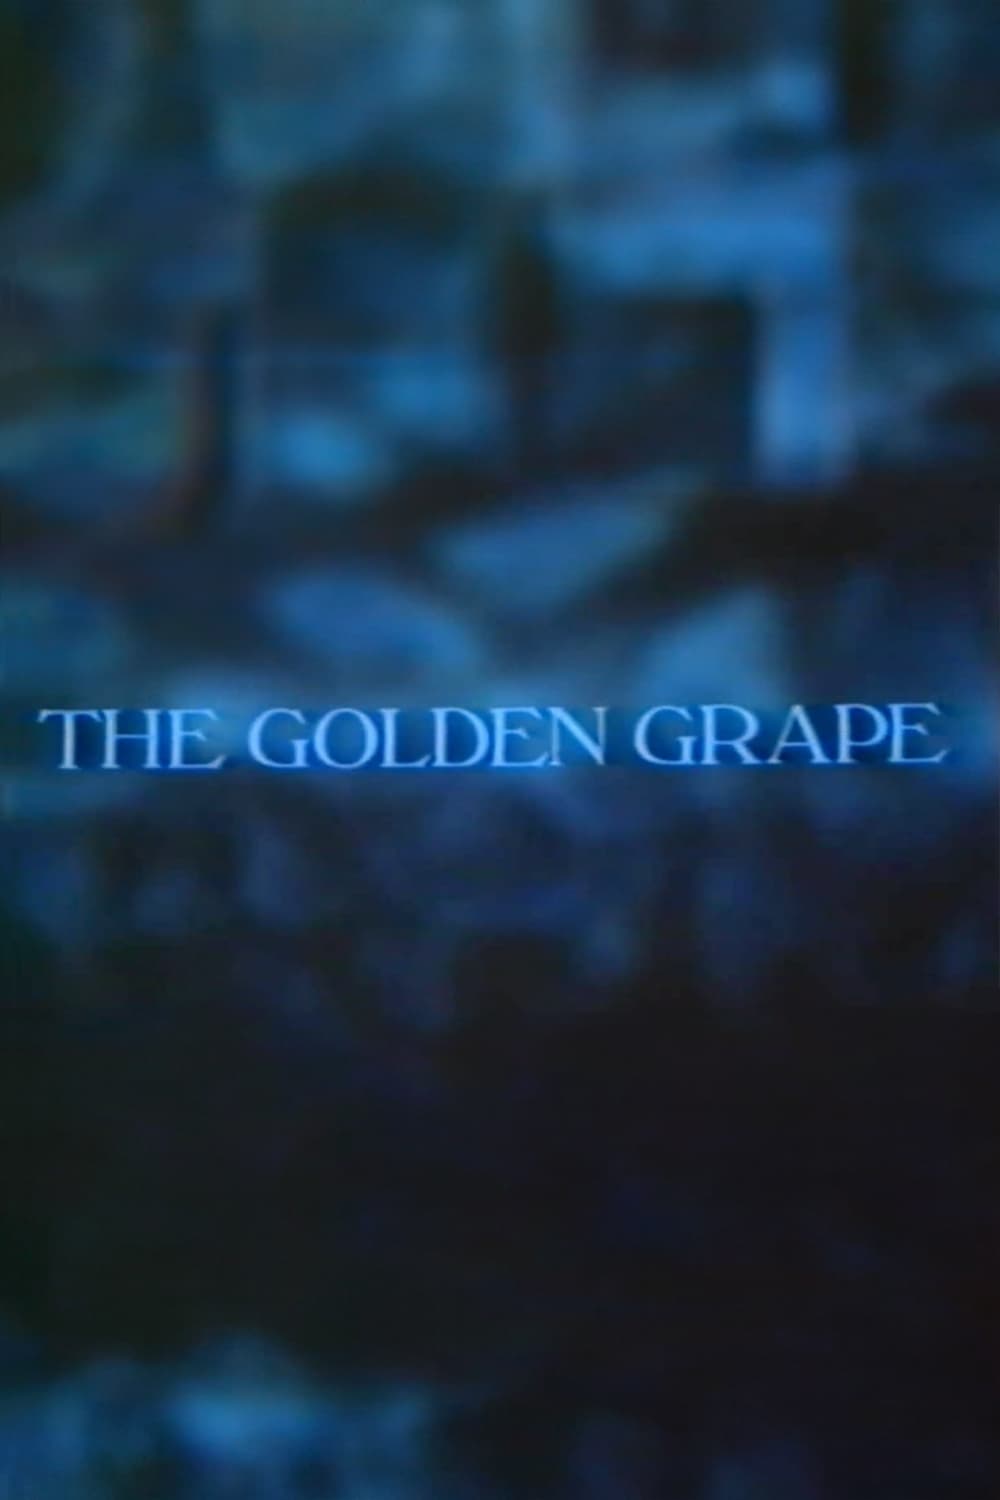 The Golden Grape